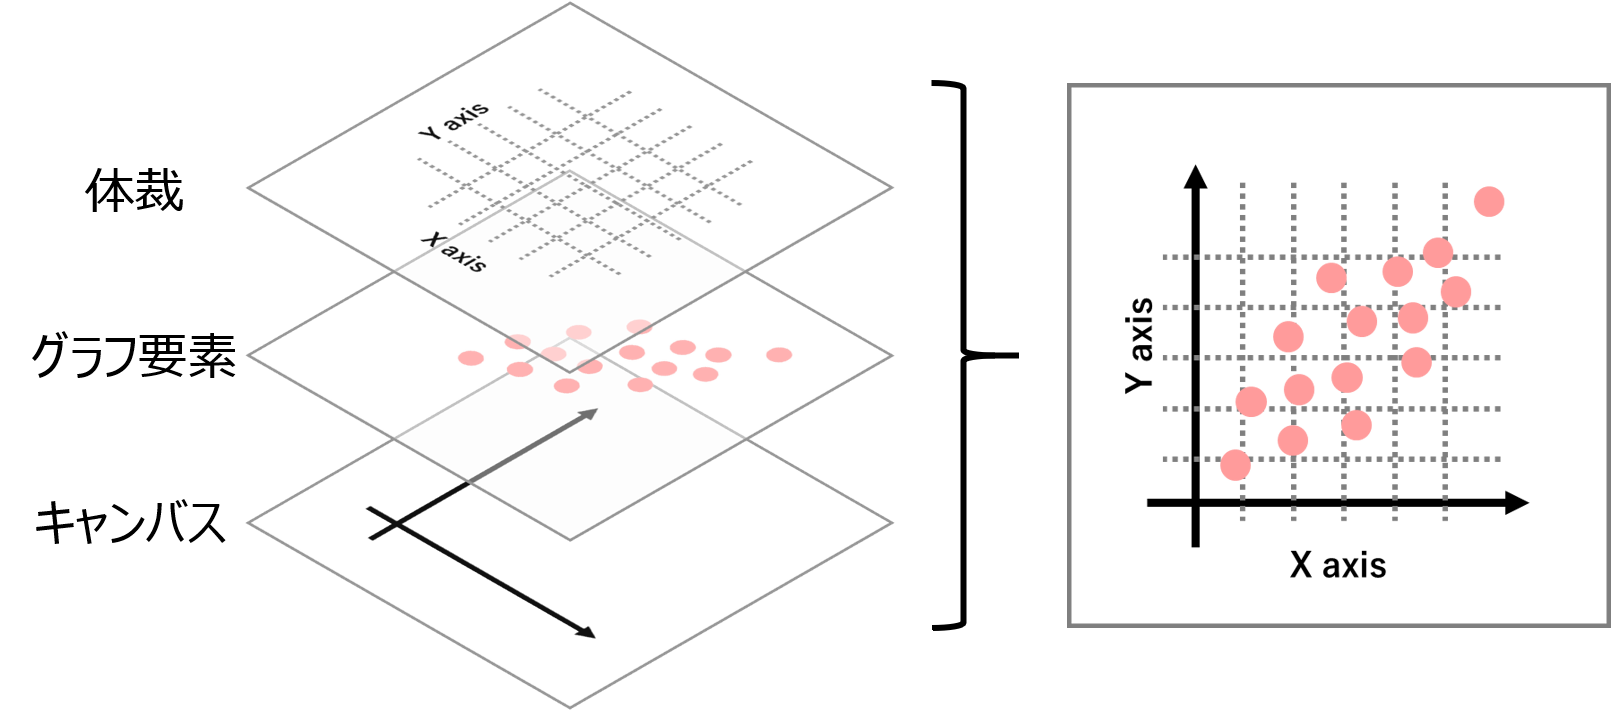 ggplot2は複数のレイヤーを重ねてグラフを描きます。レイヤーには、キャンバス、グラフ要素、体裁が含まれます。